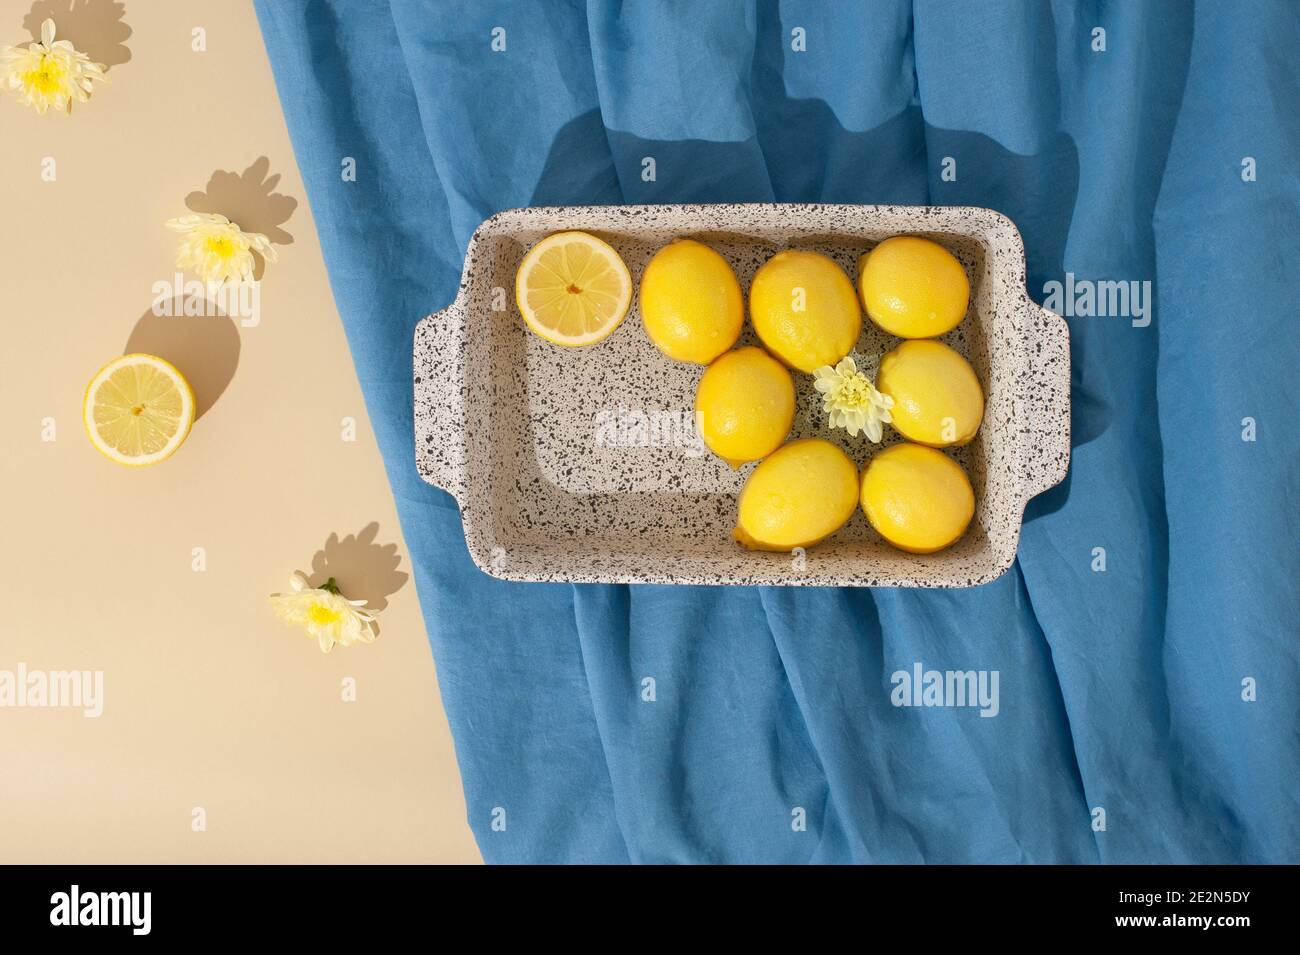 Scène estivale avec citrons, fleurs jaunes et serviette de plage bleue sur fond beige pastel. Flat lay.arrière-plan abstrait minimal. Banque D'Images